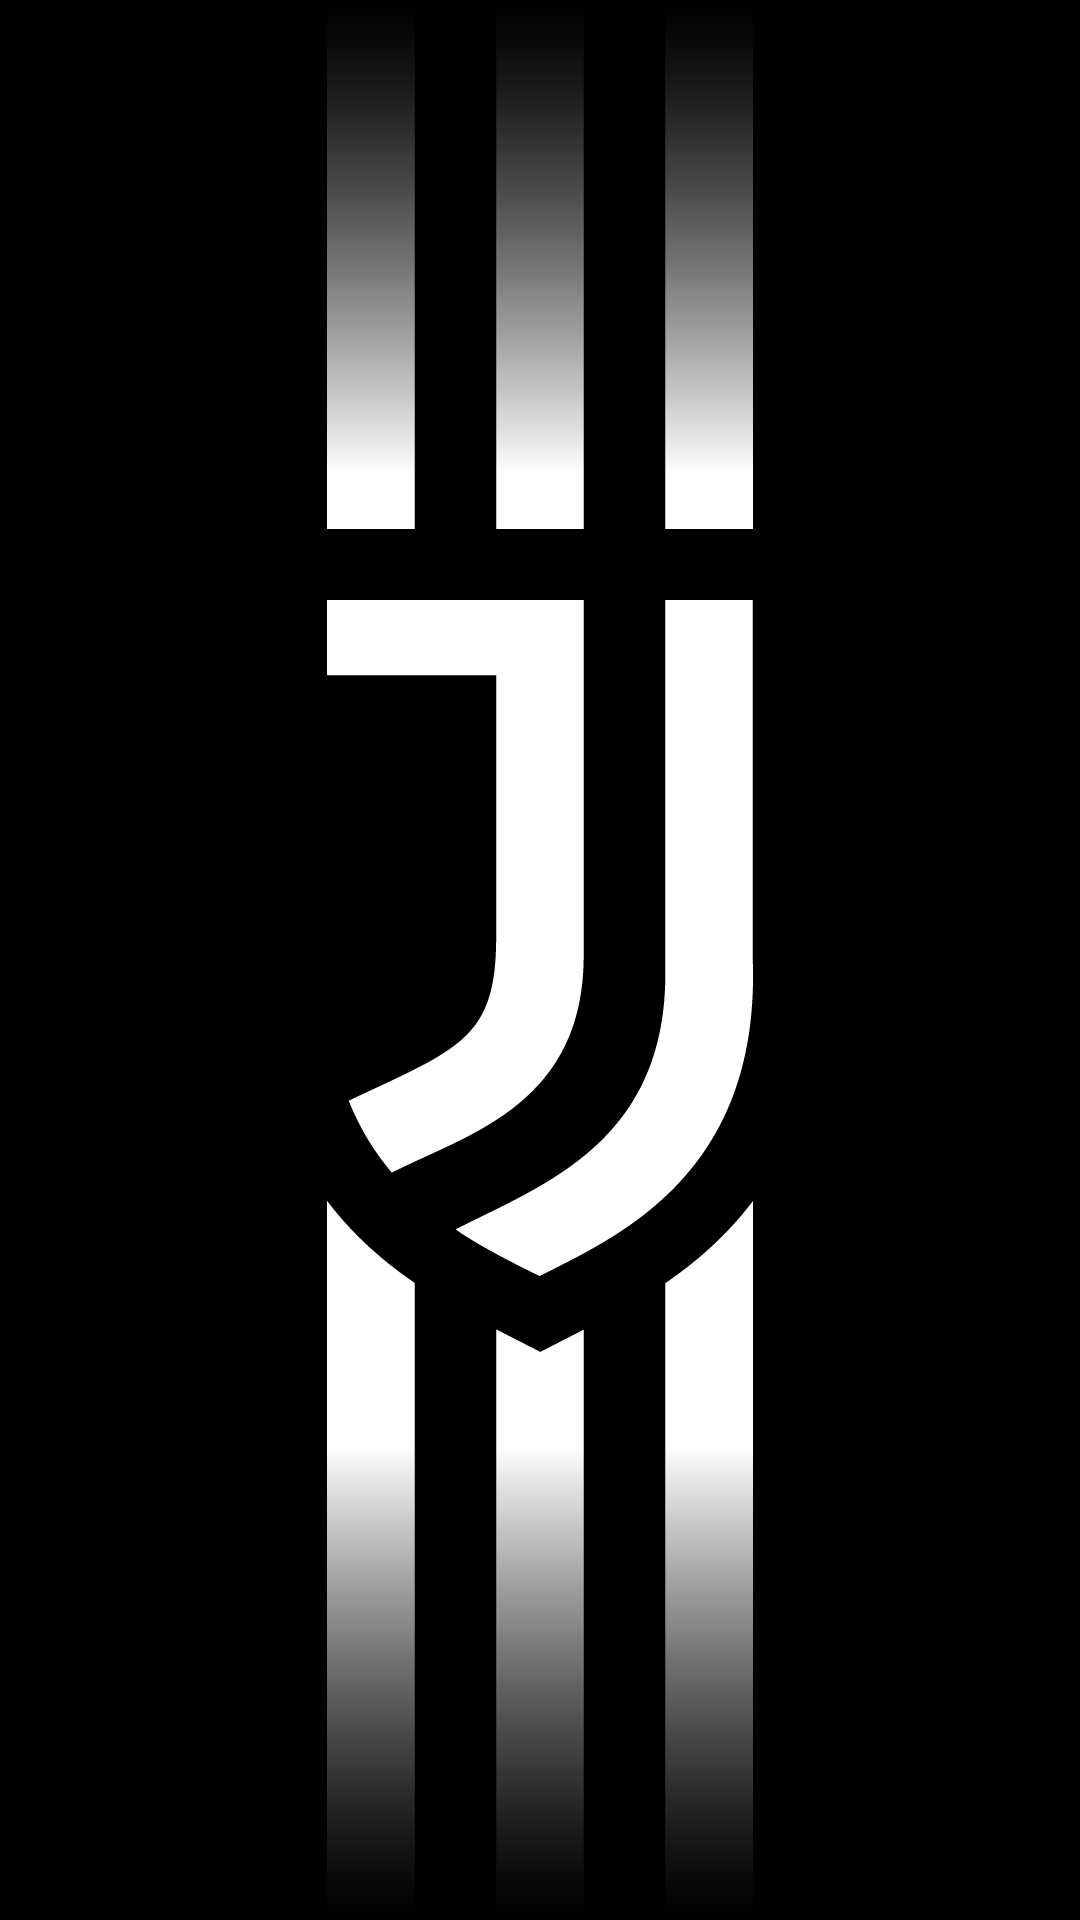 New Logo Juventus Wallpaper For iPhone. Juventus wallpaper